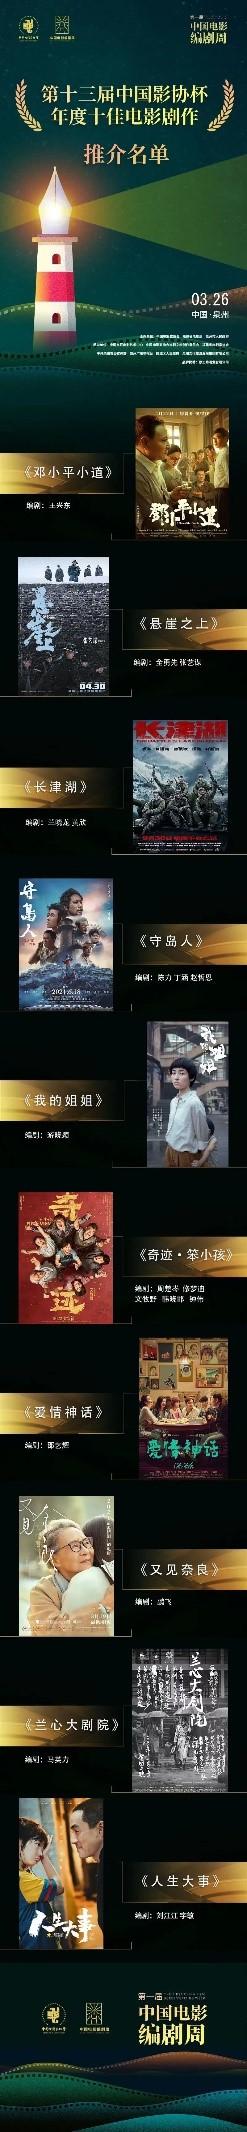 《邓小平小道》荣获“第13届中国影协杯年度十佳电影剧作”